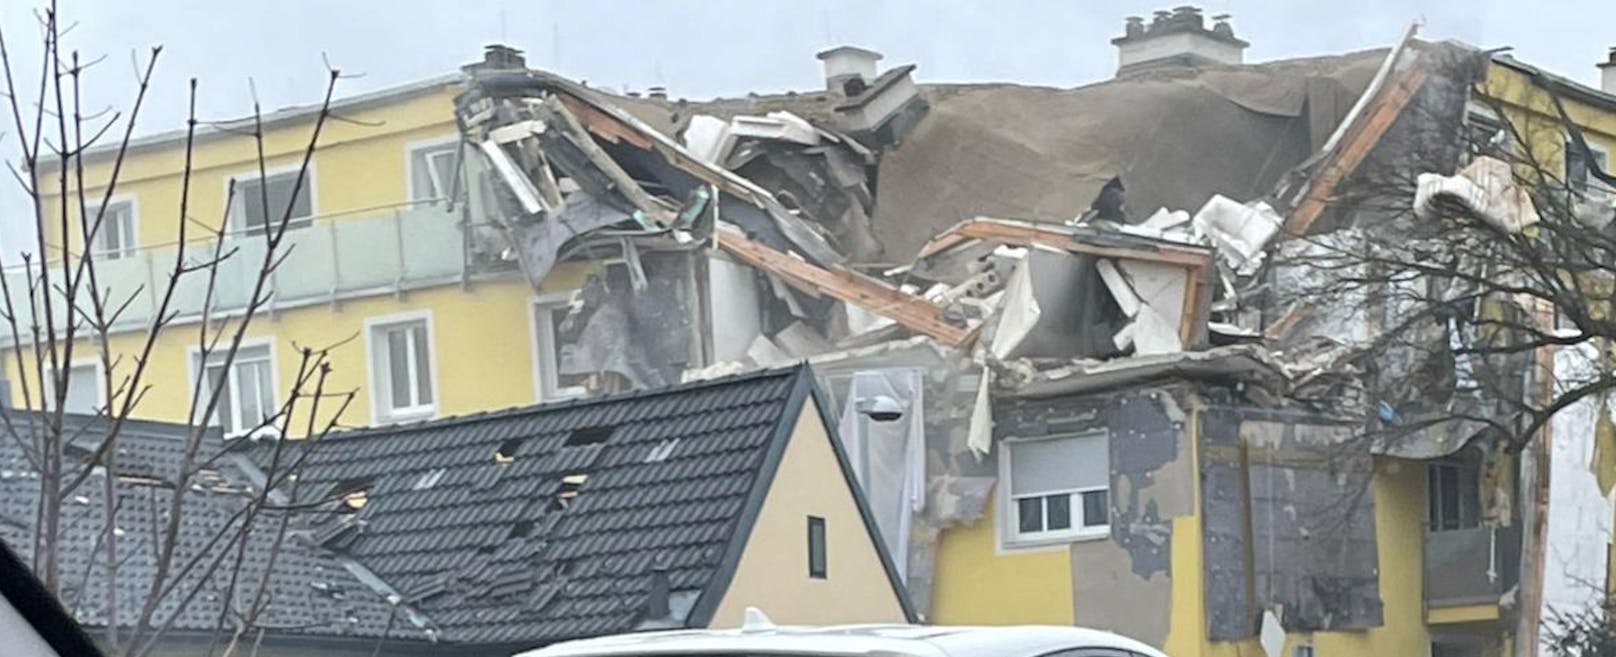 Zerstörtes Wohnhaus vom Auto aus in Langenzersdorf